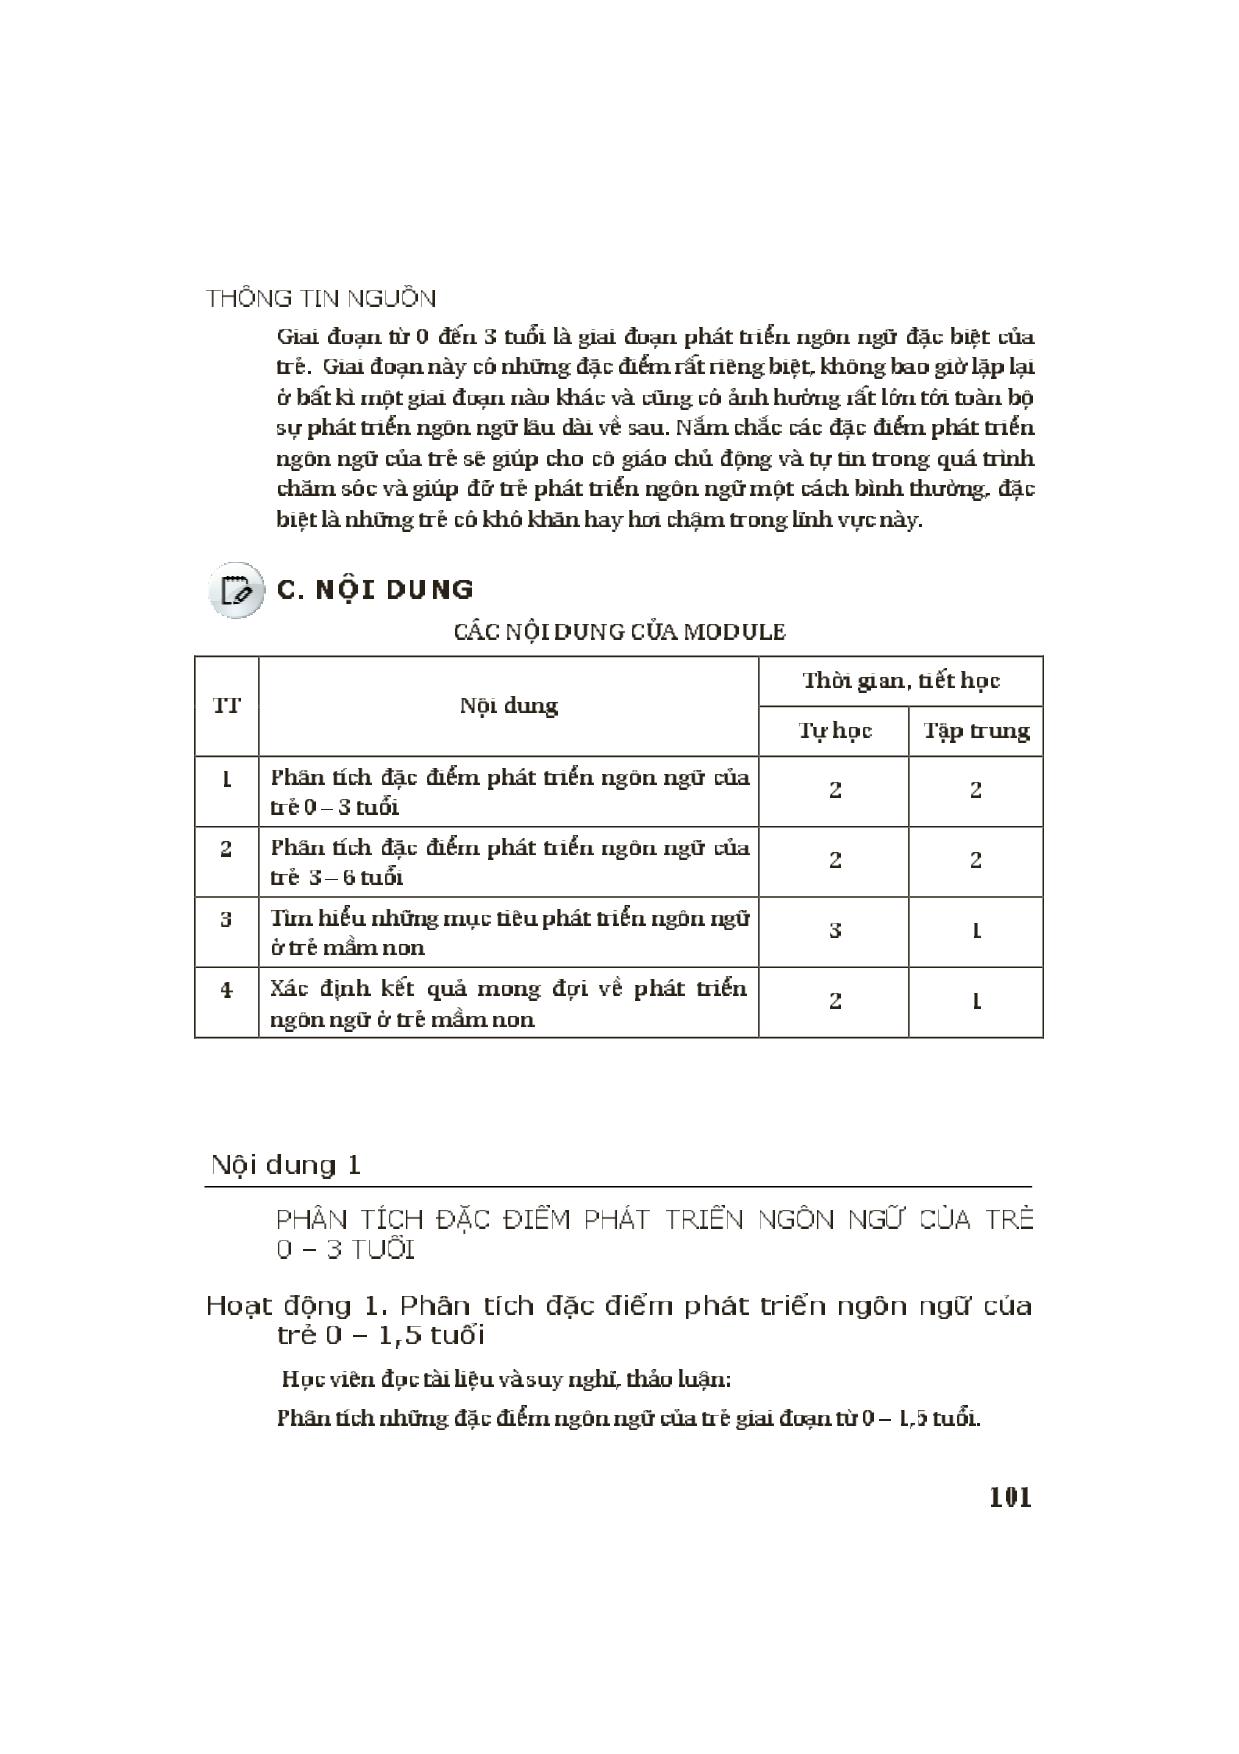 Module Mầm non 3: Đặc điểm phát triển ngôn ngữ, những mục tiêu và kết quả mong đợi ở trẻ mầm non về ngôn ngữ trang 3